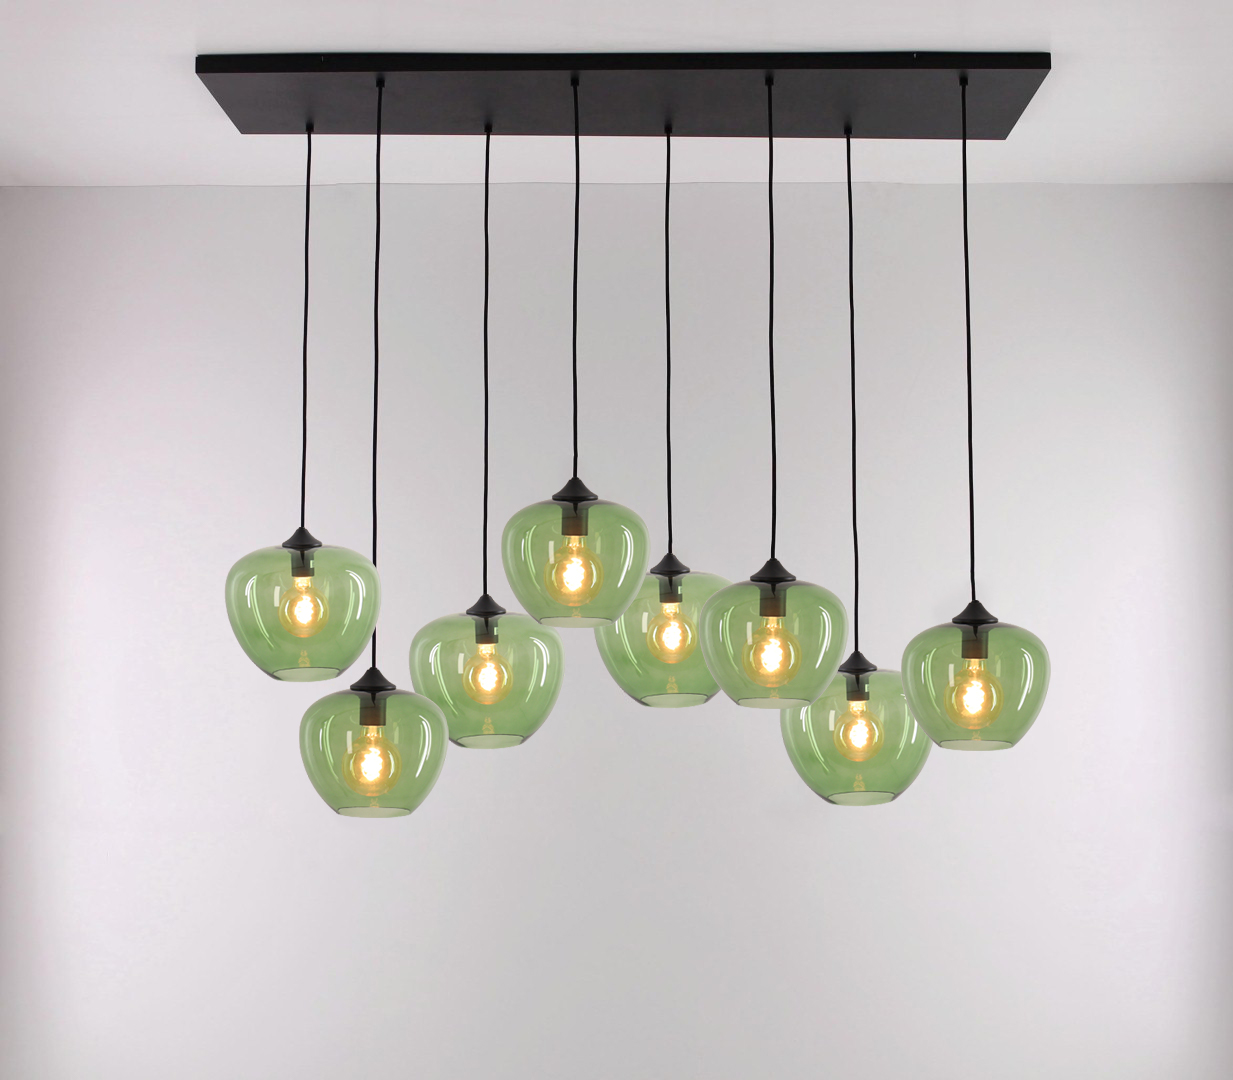 Integratie Monica Tegenhanger Hanglamp groen glas 8 lichts brede balk